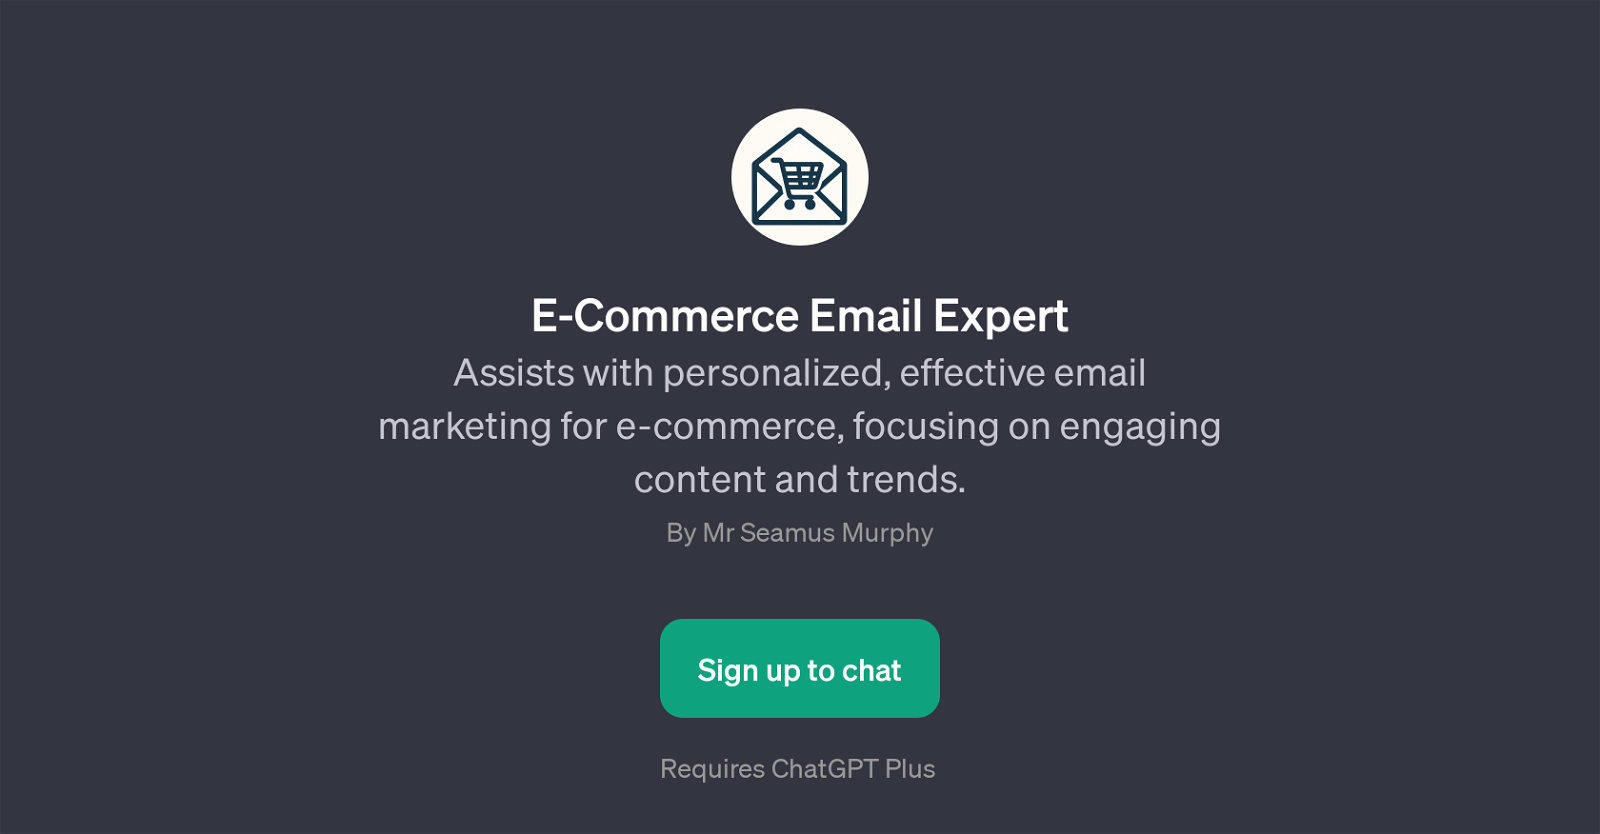 E-Commerce Email Expert website